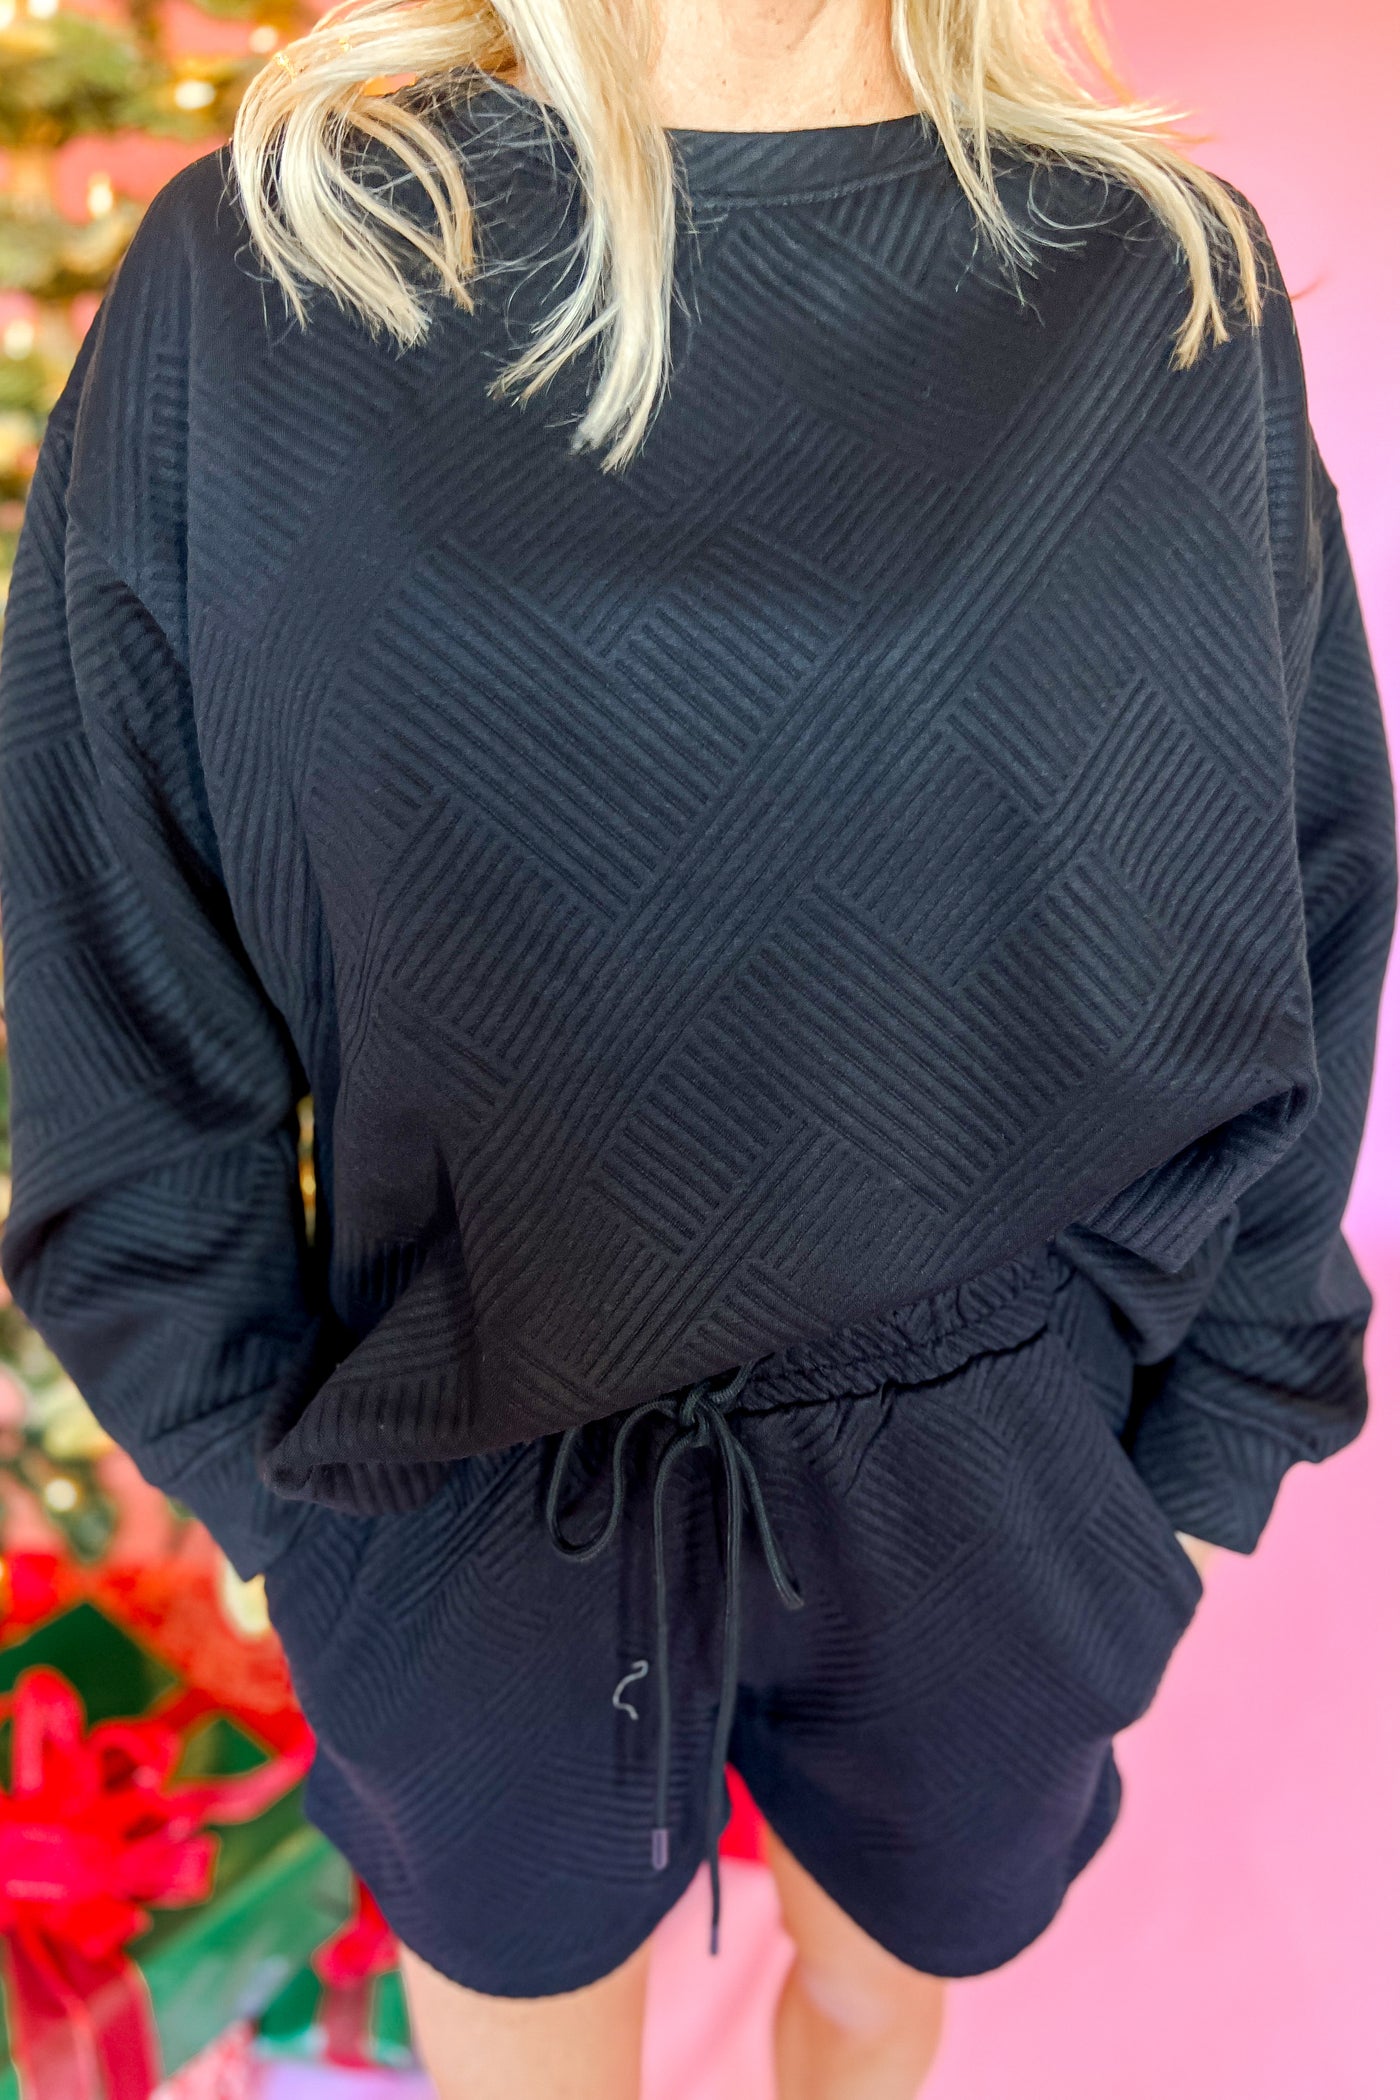 Hemlock sweatshirt top, black